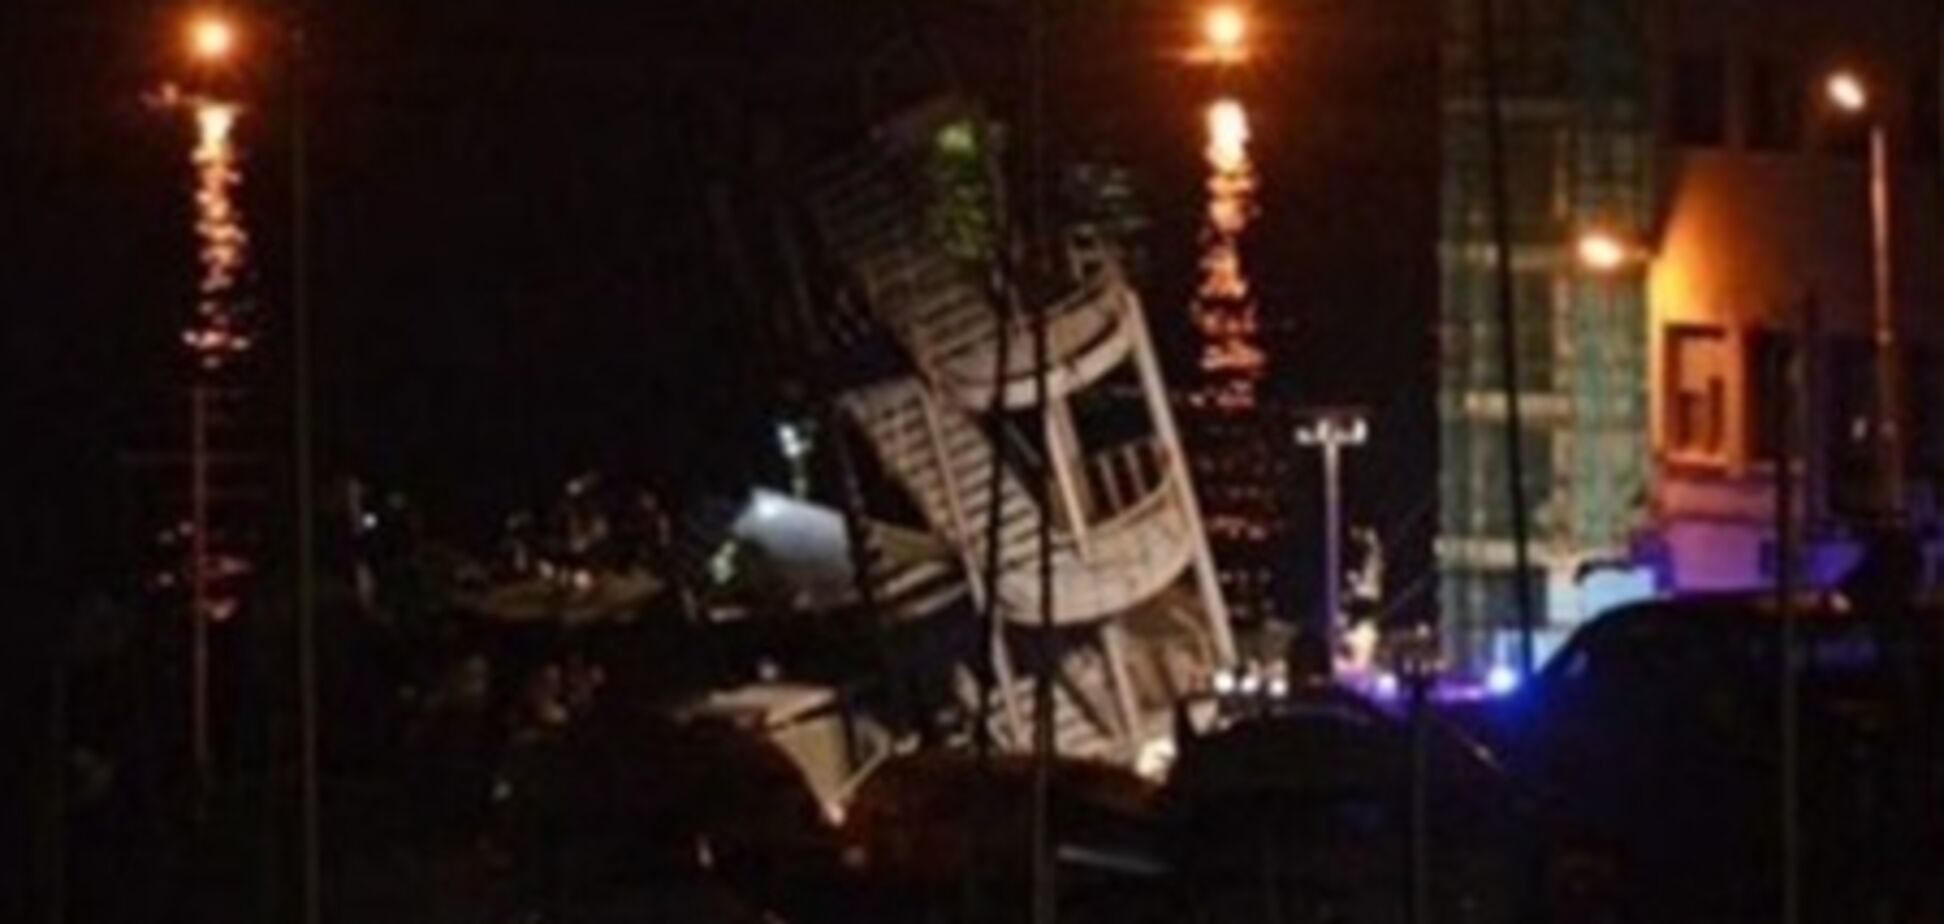 Кораблекрушение в Италии: семь жертв